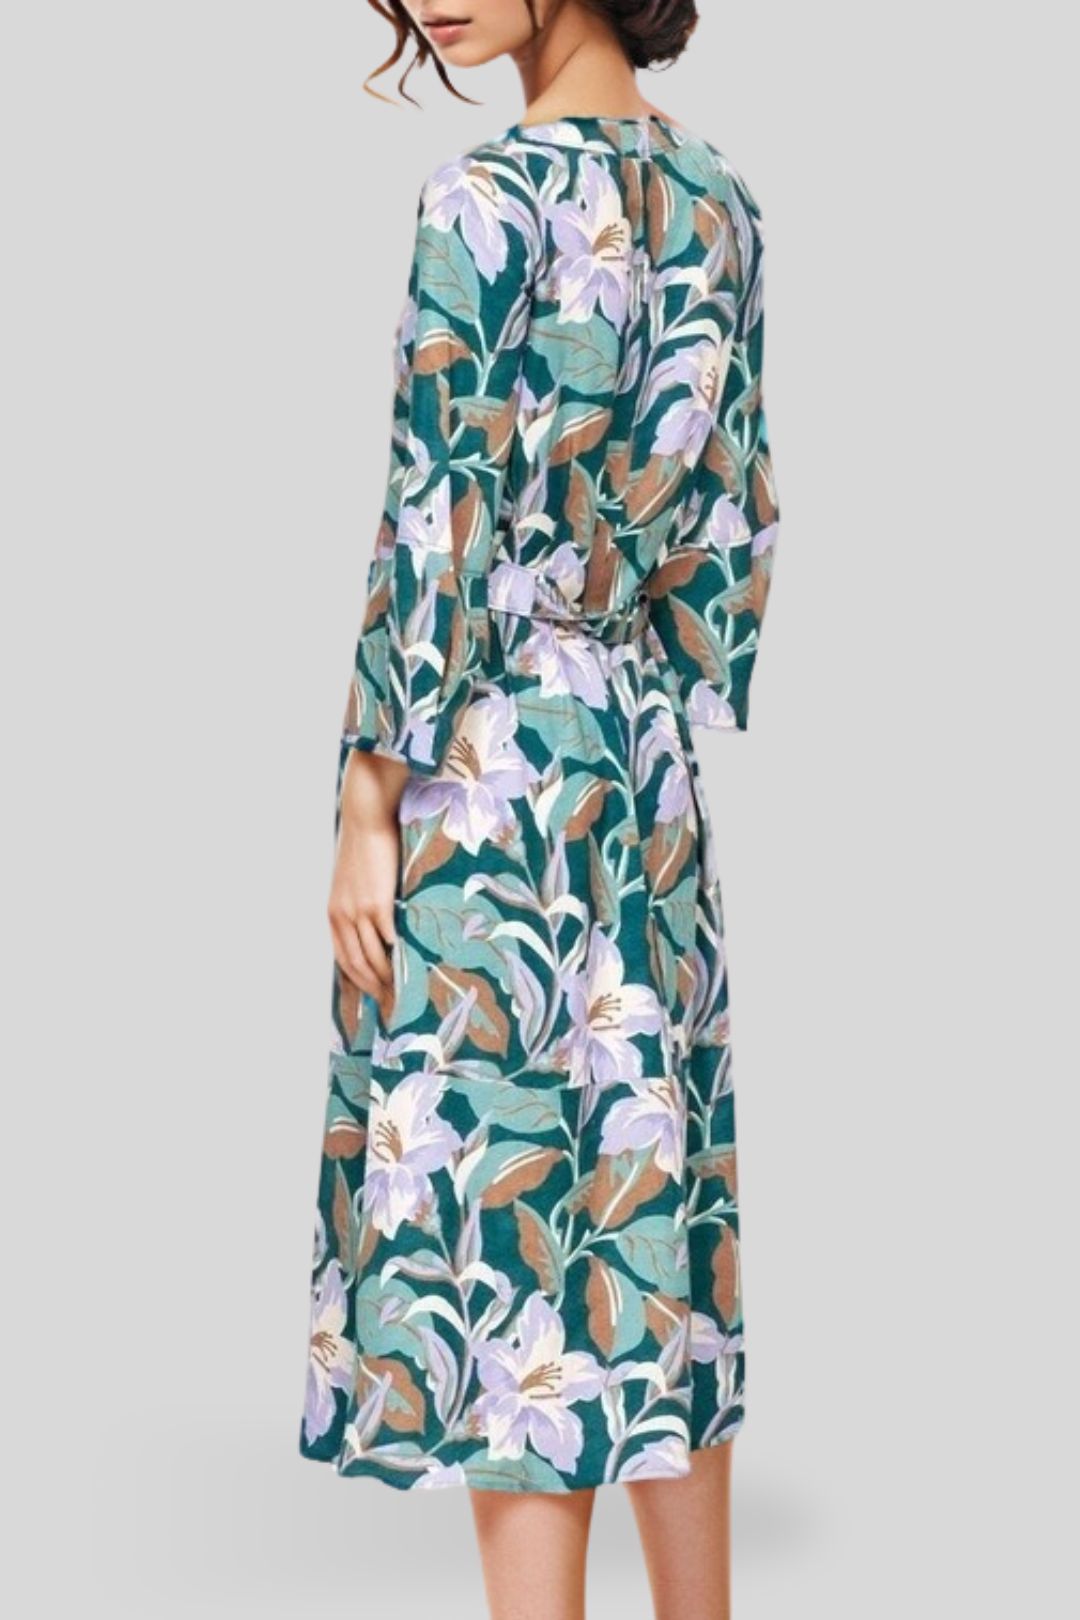 Veronika Maine	Pastel Lilies Dress in Jade